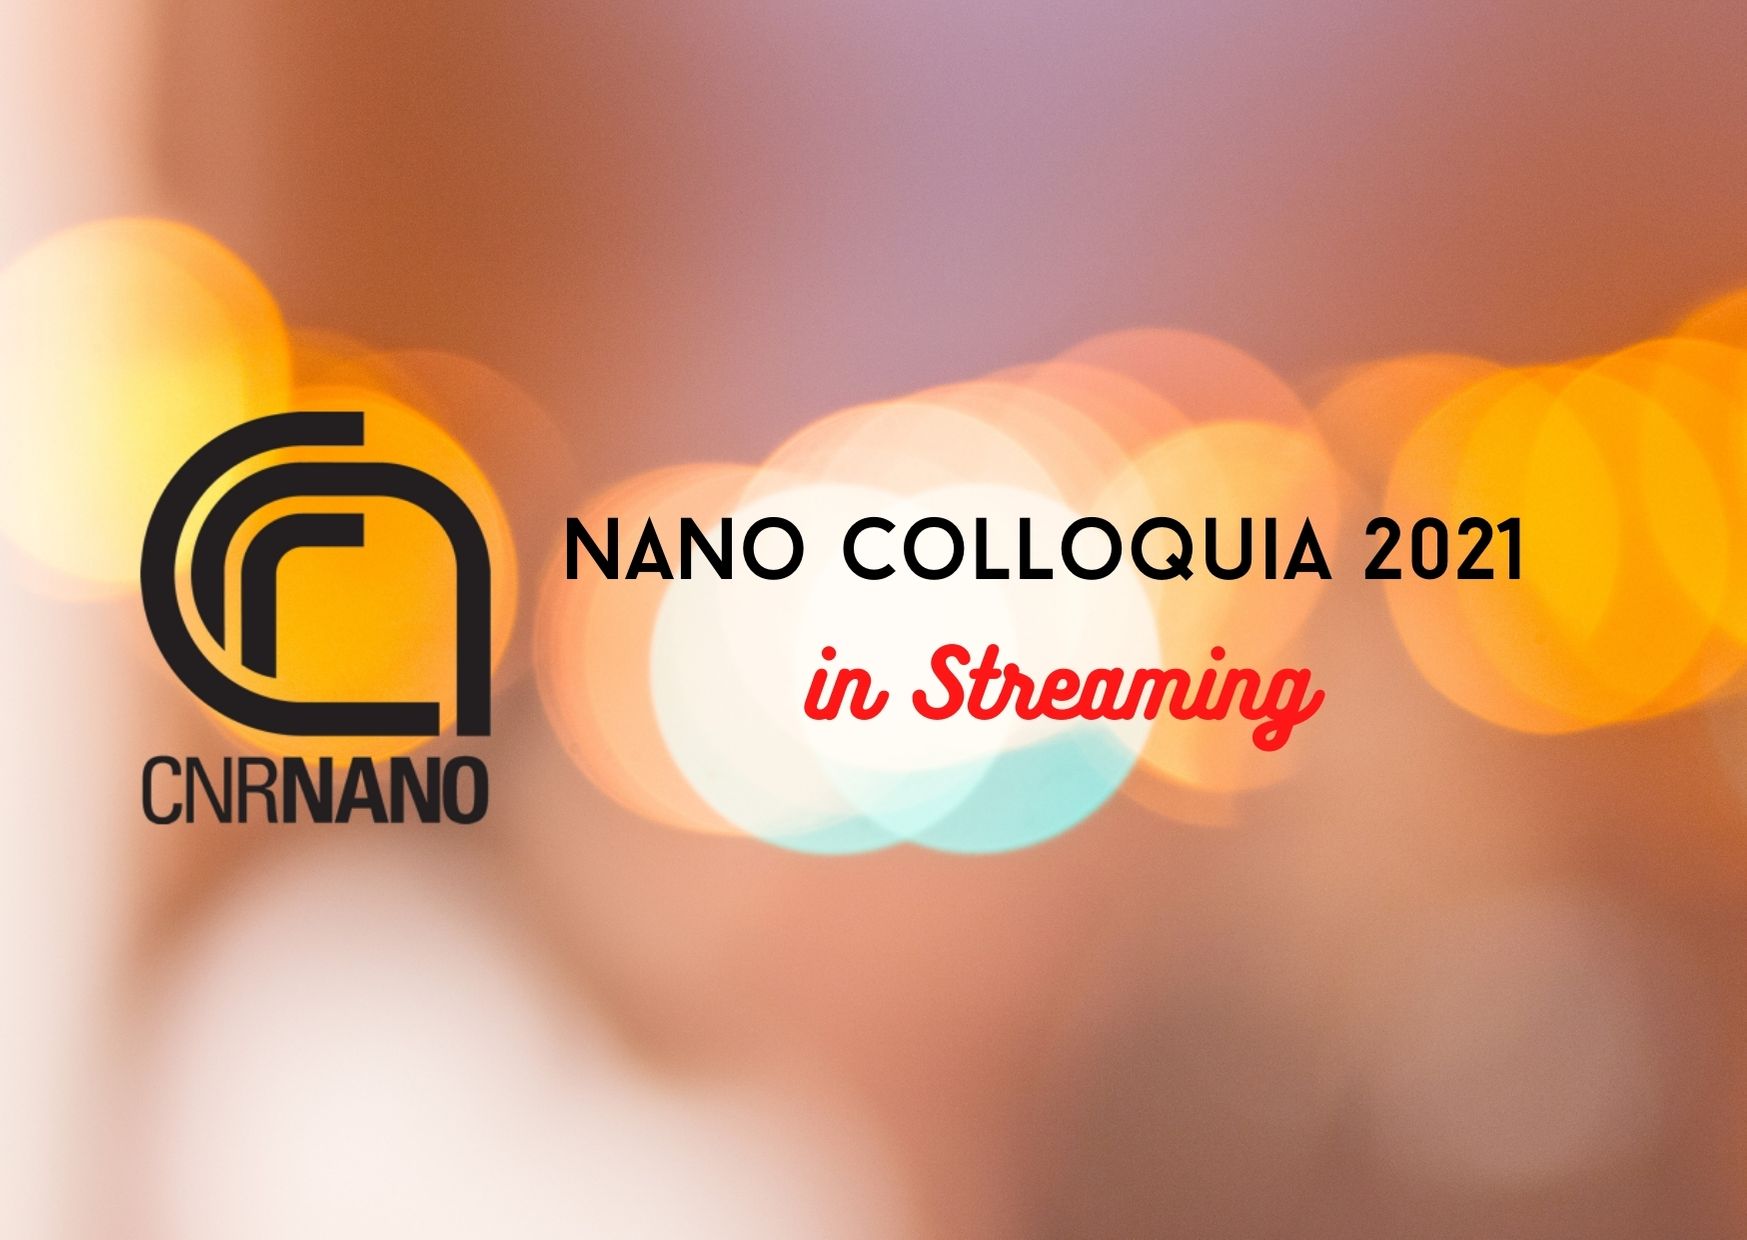 NANO Colloquia 2021 in streaming - Mariacristina Gagliardi